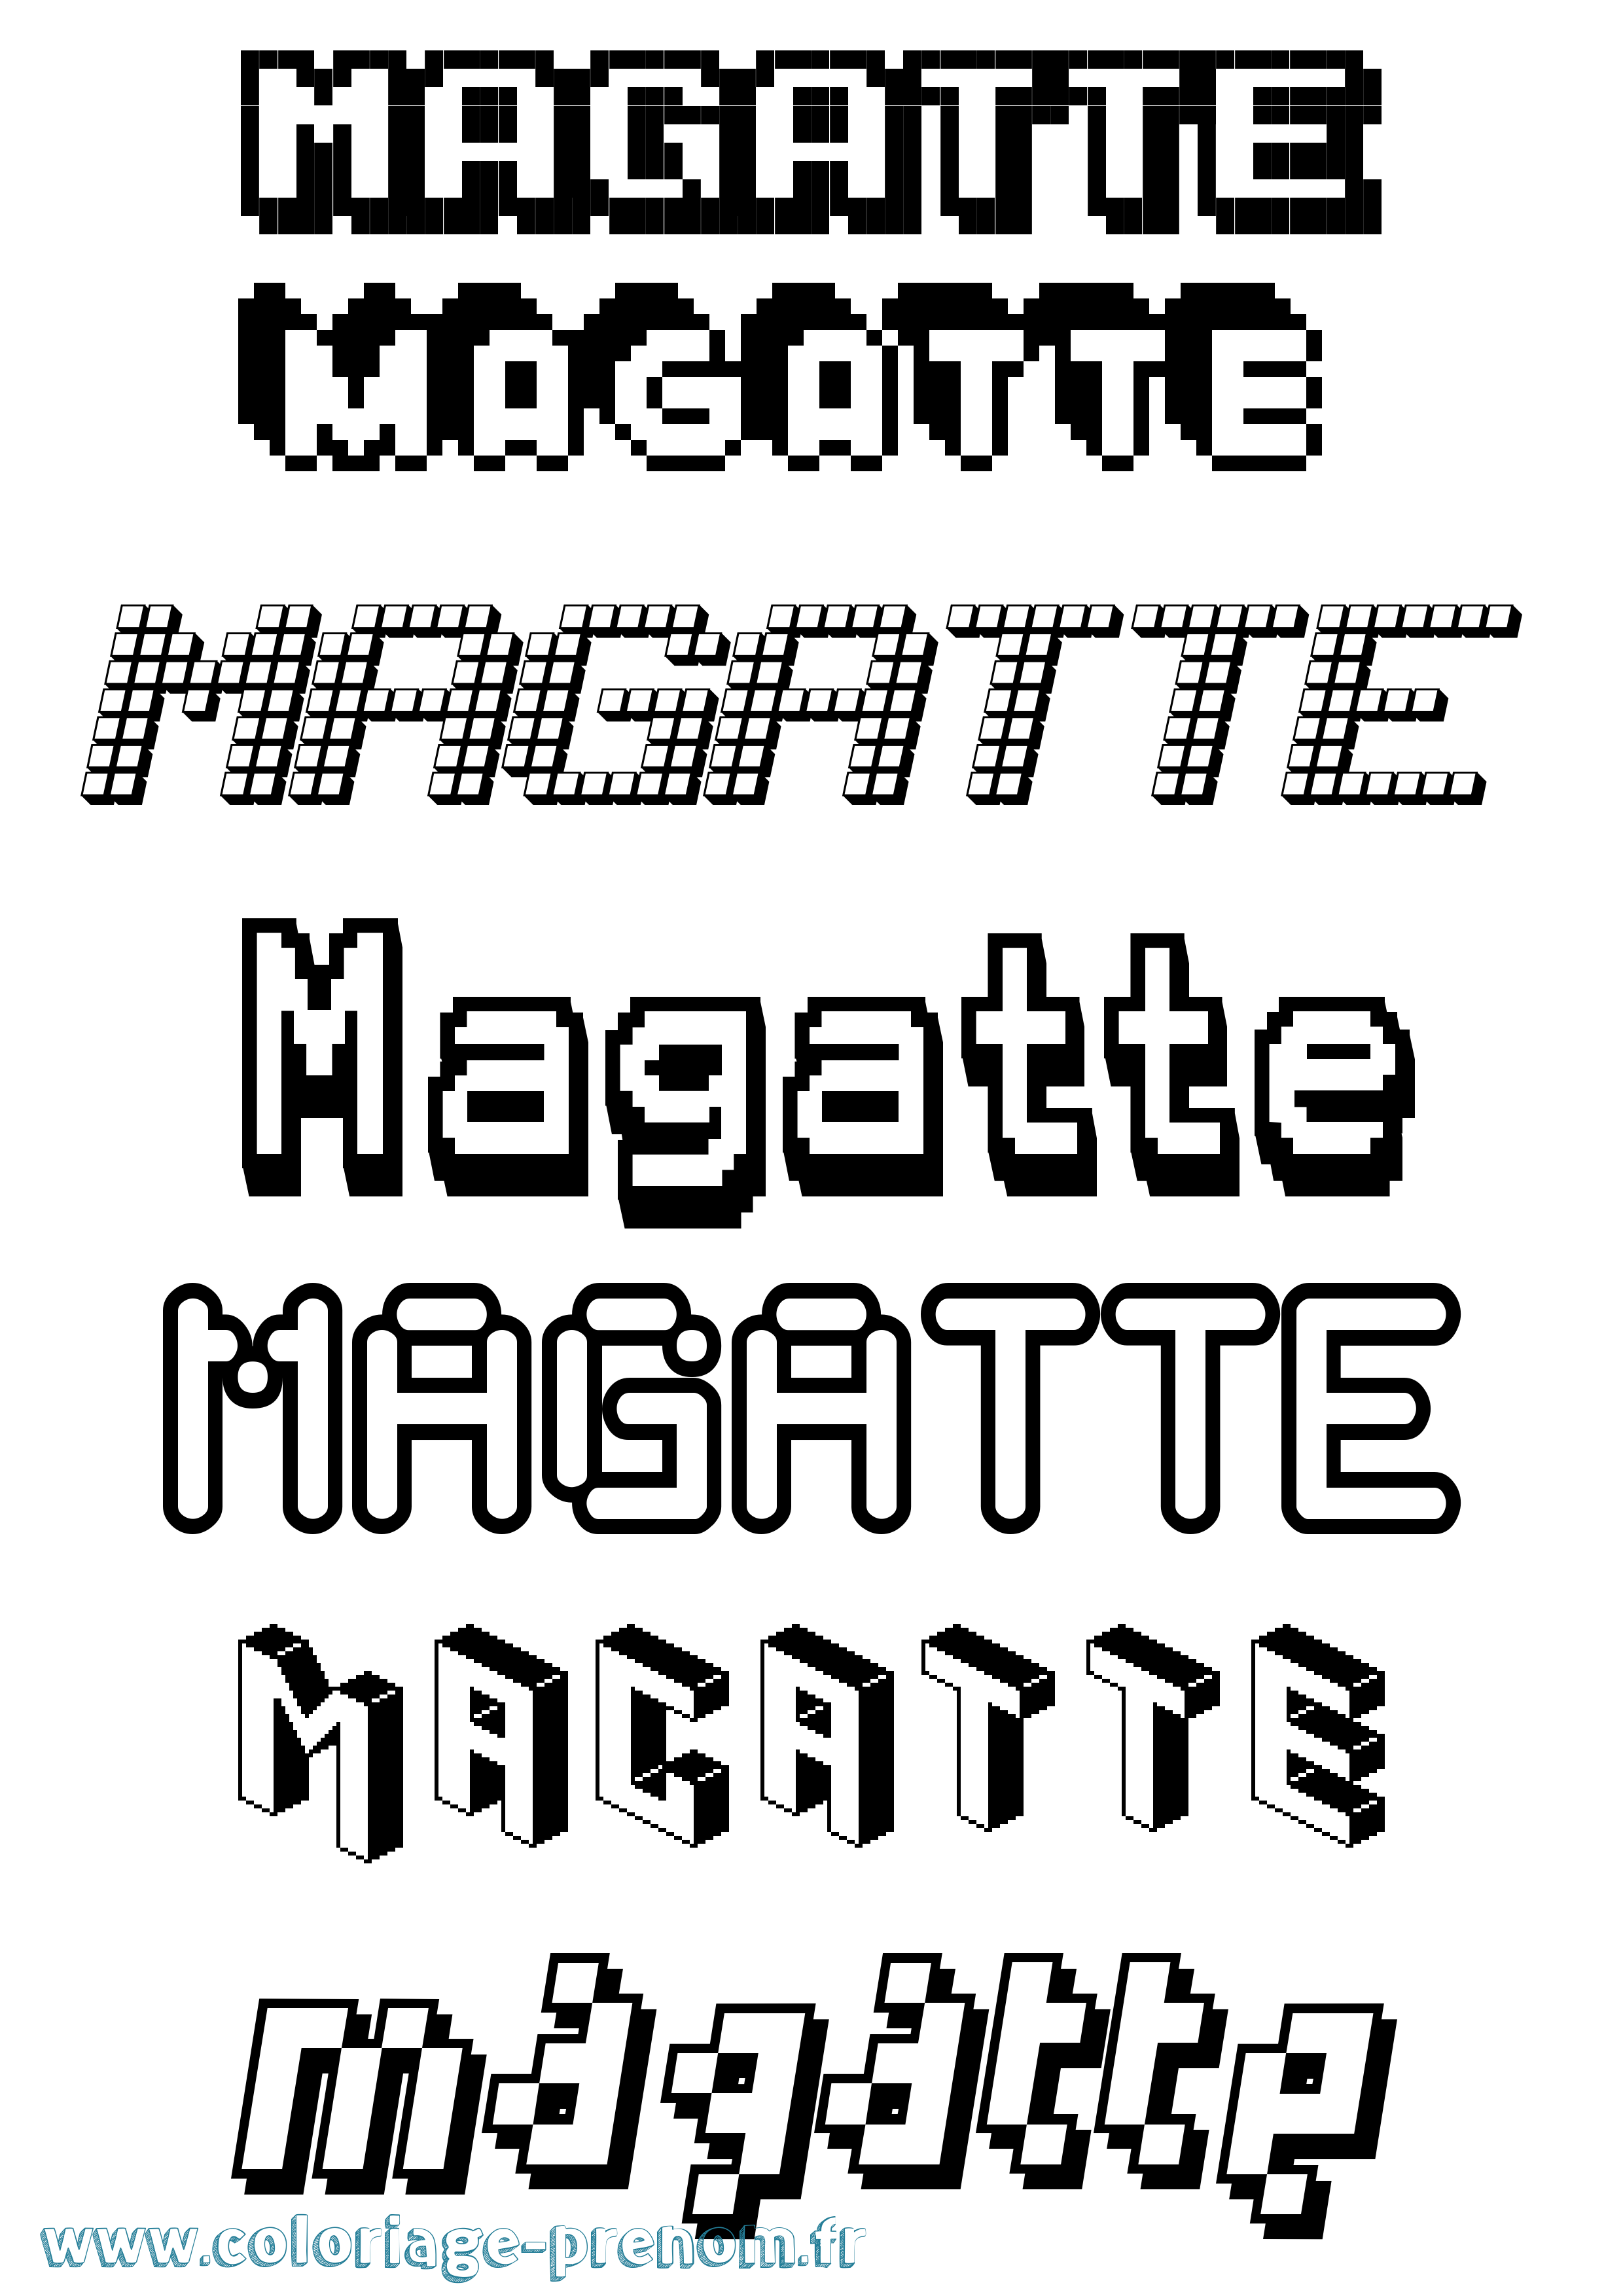 Coloriage prénom Magatte Pixel